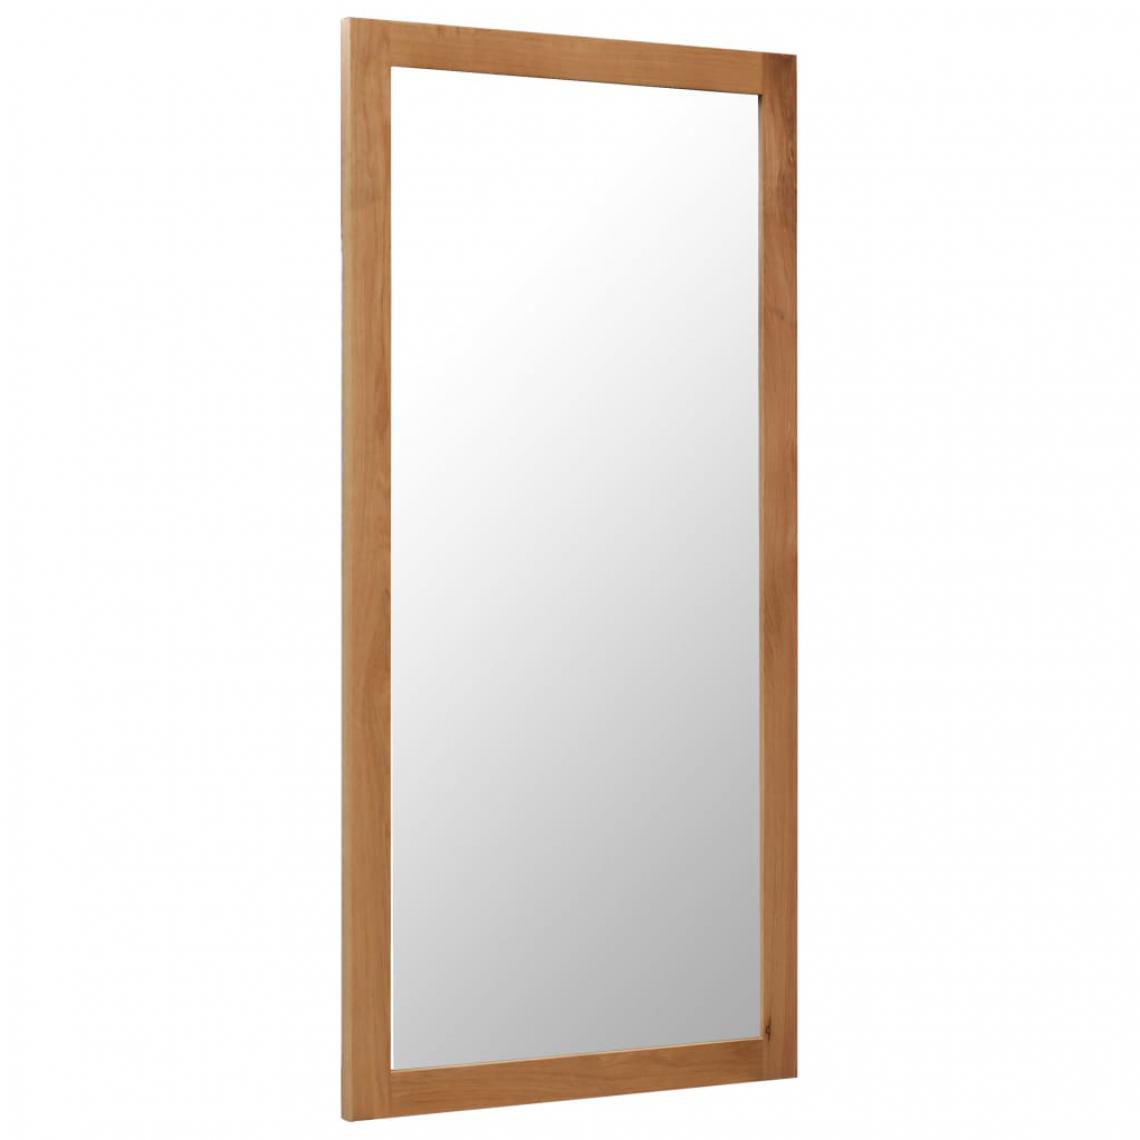 Icaverne - Icaverne - Miroirs gamme Miroir 60 x 120 cm Bois de chêne massif - Miroir de salle de bain